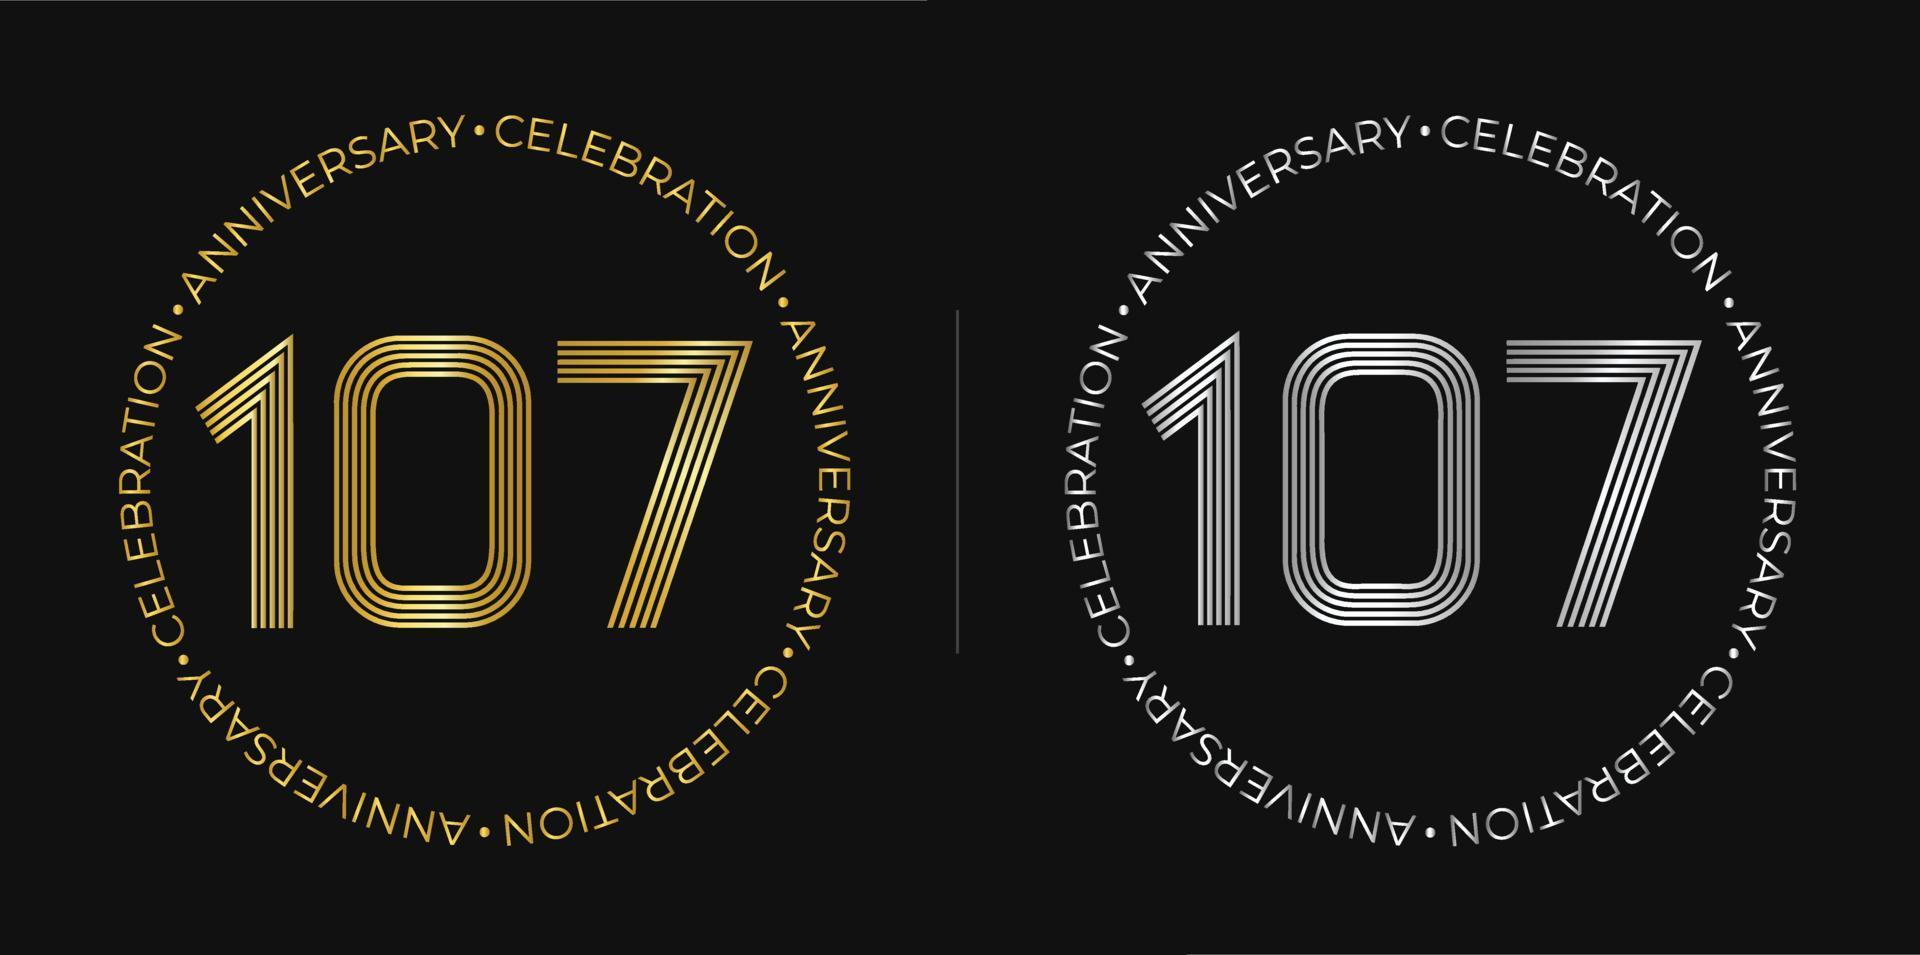 107e anniversaire. bannière de célébration d'anniversaire de cent sept ans aux couleurs dorées et argentées. logo circulaire avec un design original de chiffres aux lignes élégantes. vecteur